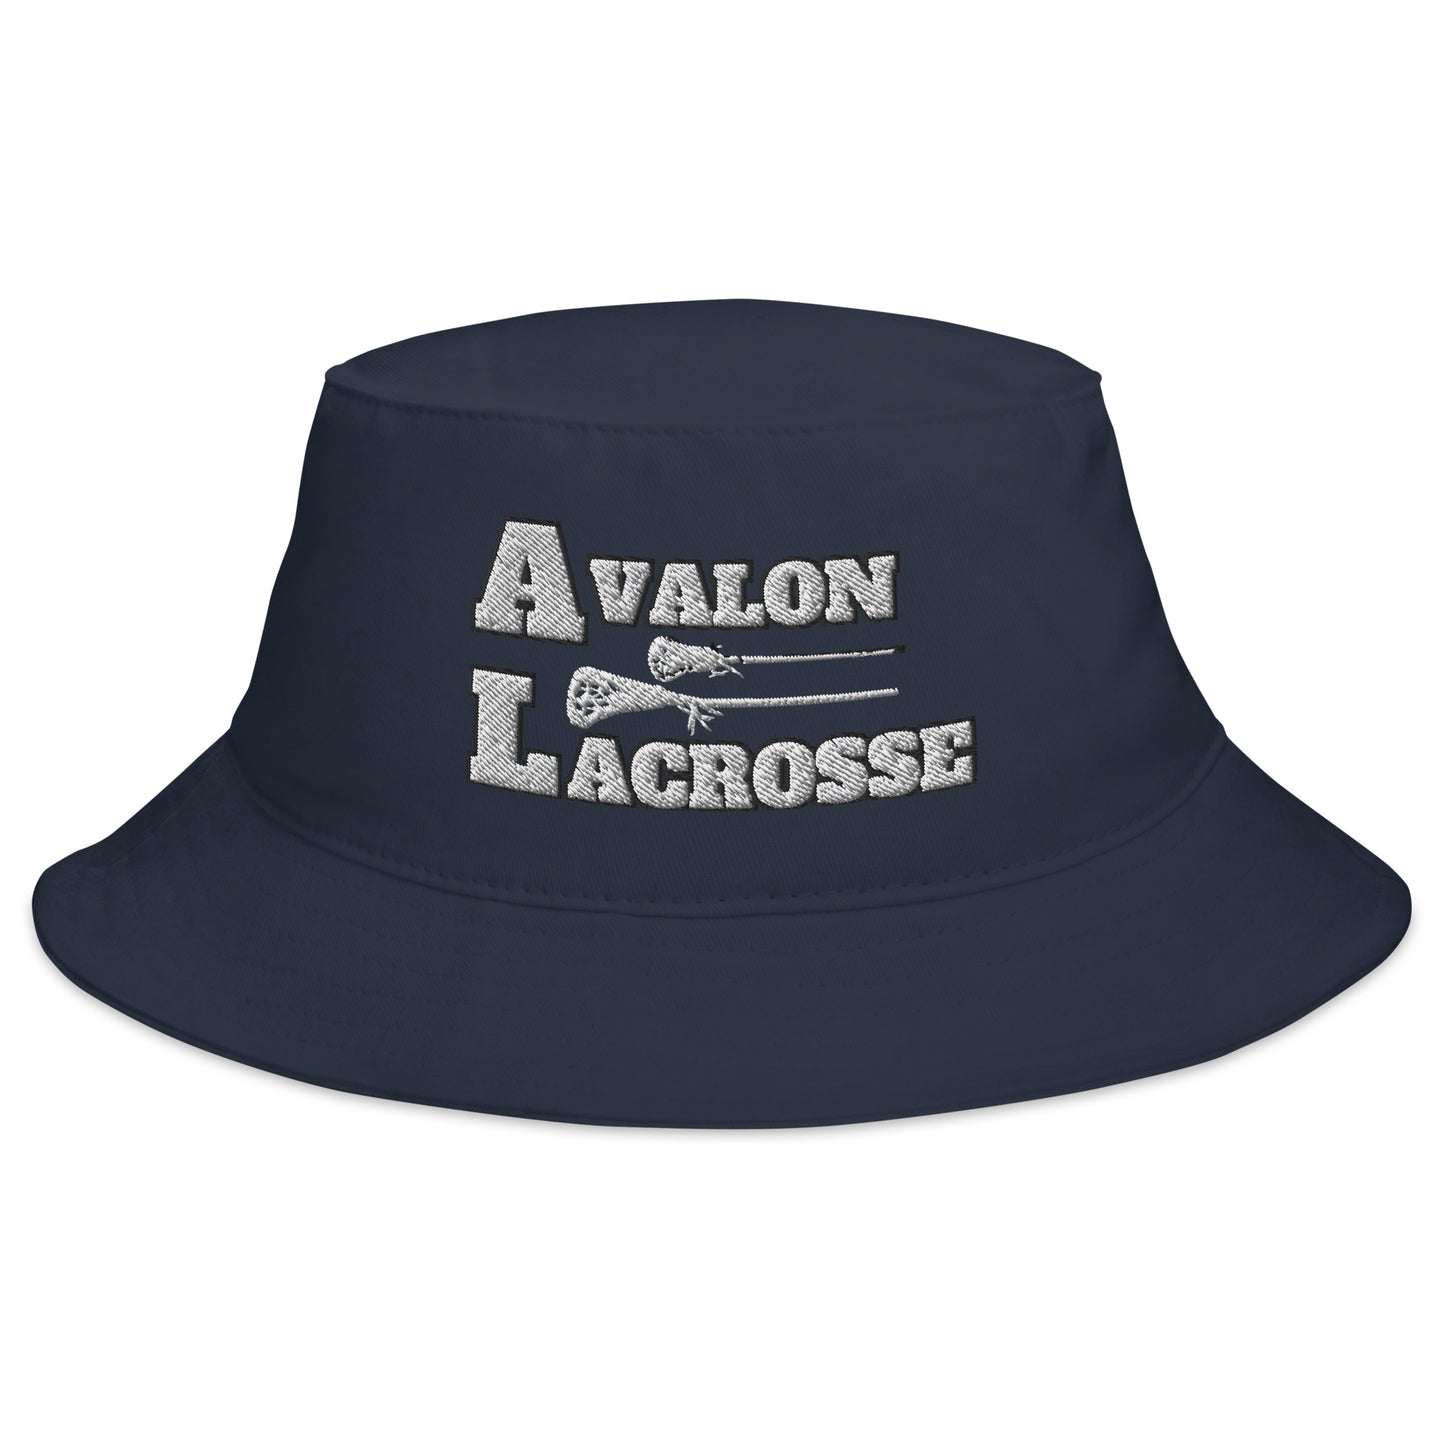 Avalon Lacrosse Bucket Hat